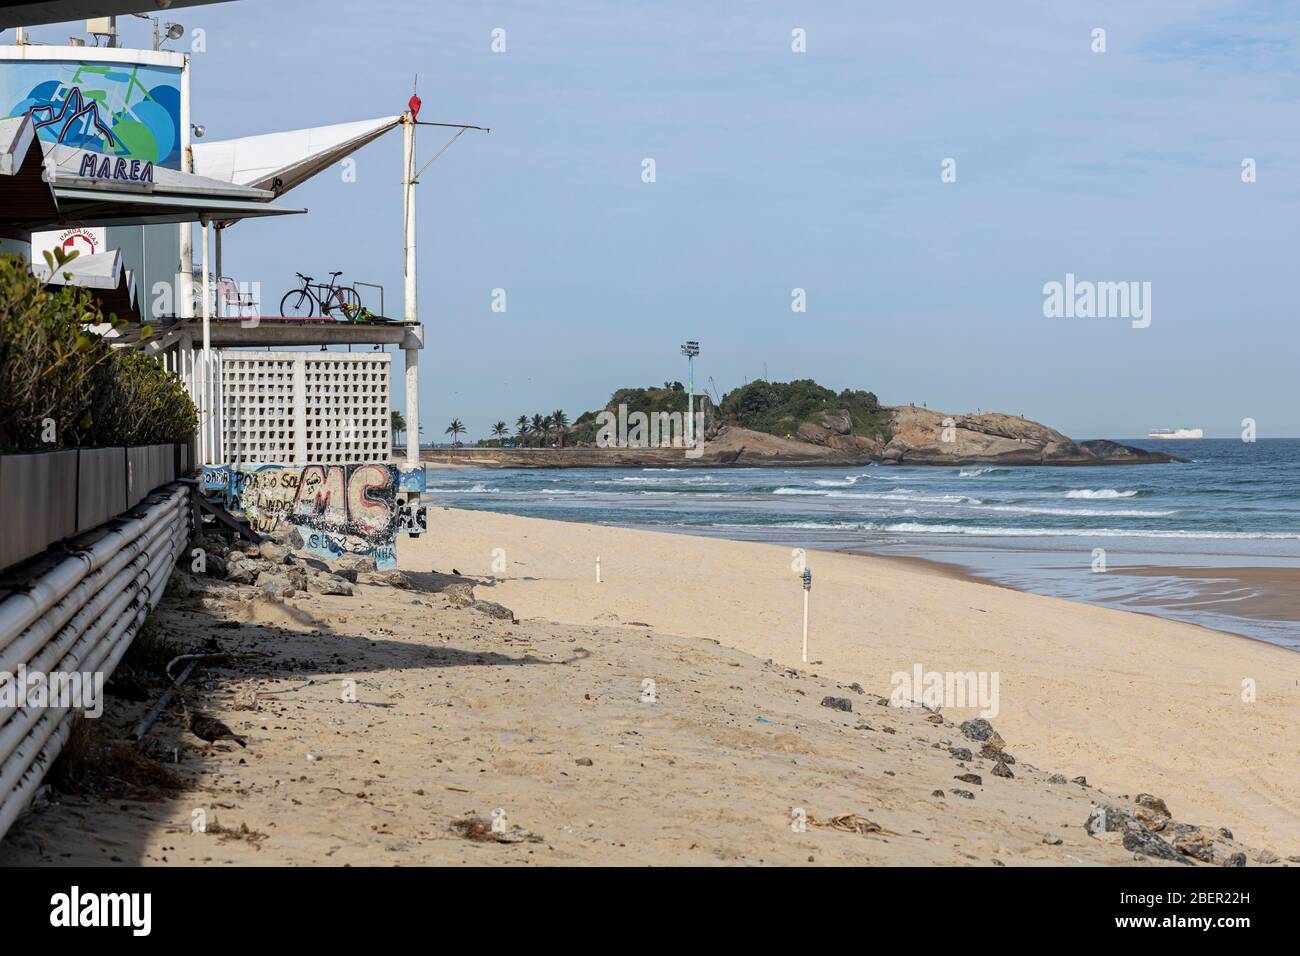 Playa vacía con kiosco y puesto de socorrista con la roca Arpoador al fondo durante el brote del virus de la corona COVID-19 Foto de stock